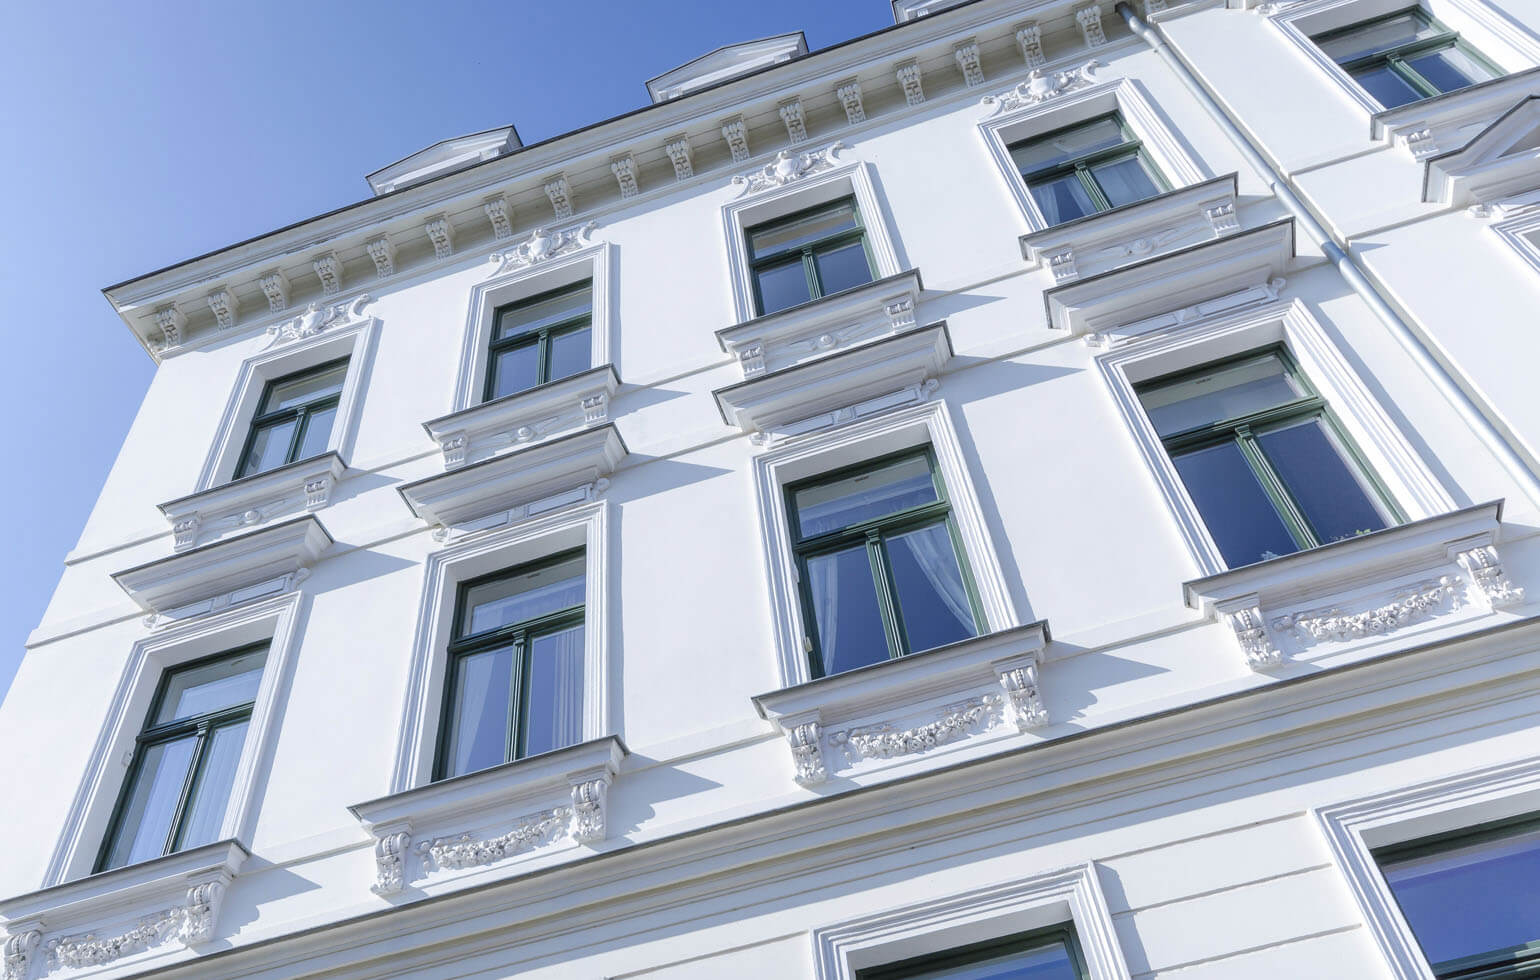 Fenstersanierung Berlin Malerbetrieb Kluge - Referenzen Privatkunden